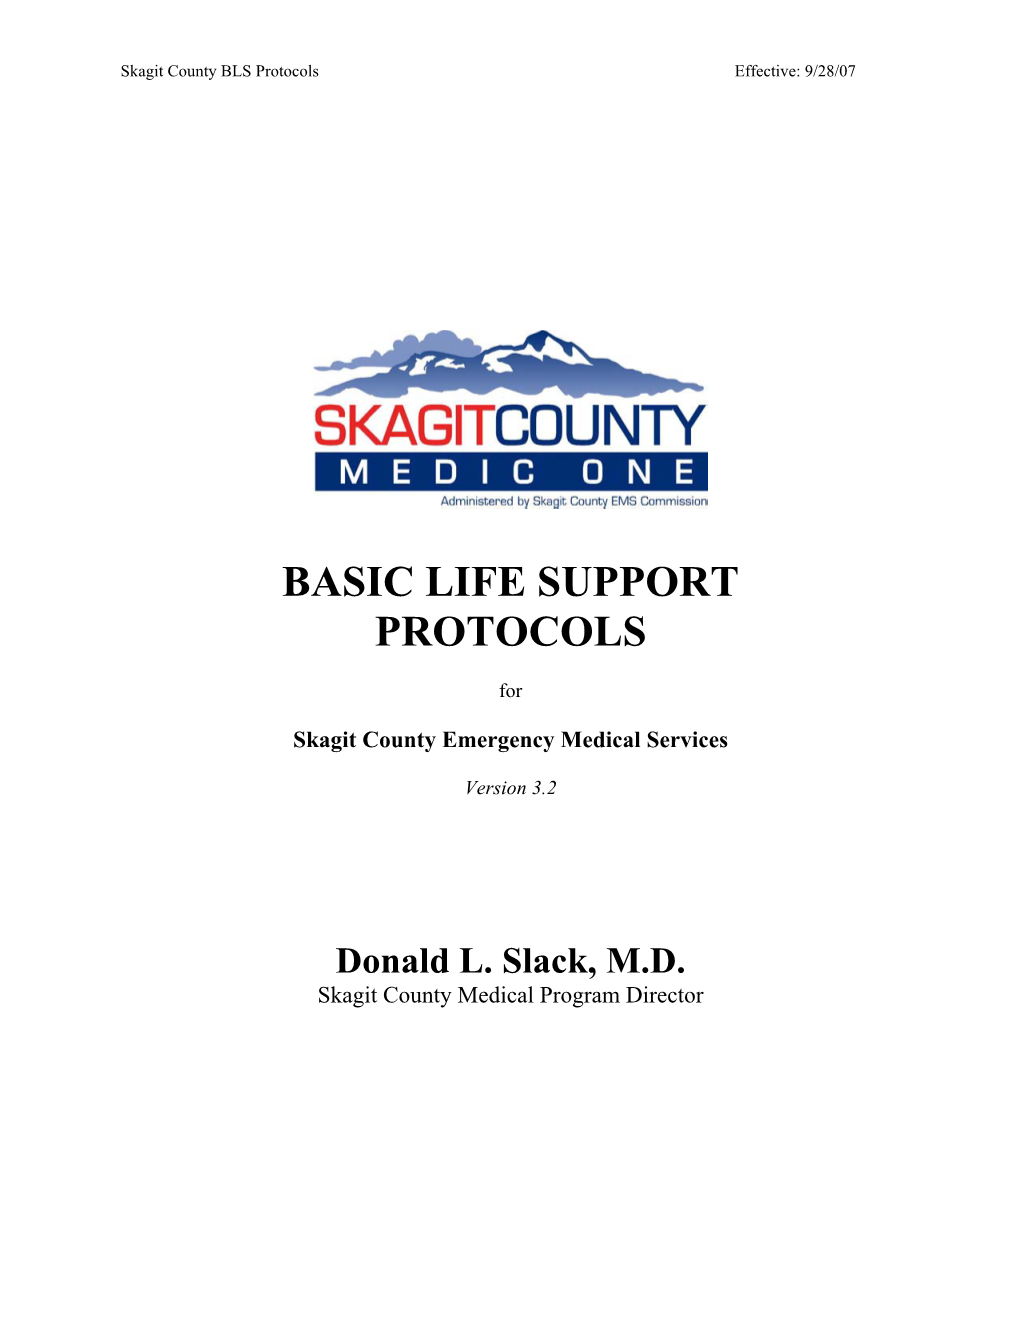 Basic Life Support Protocols